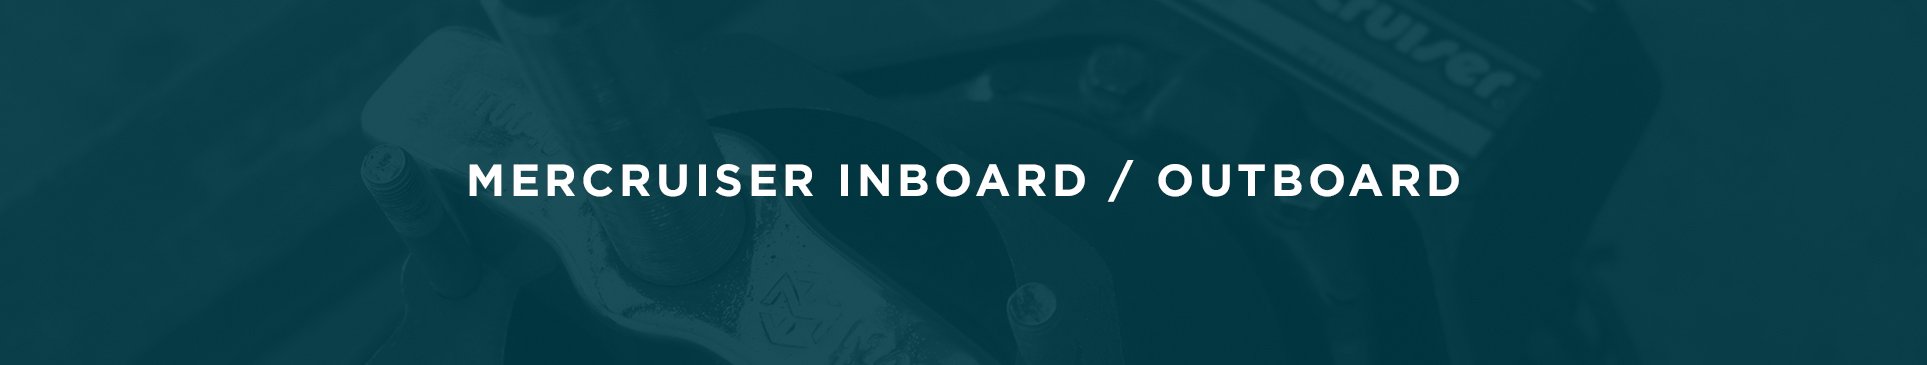 Inboard/Outboard